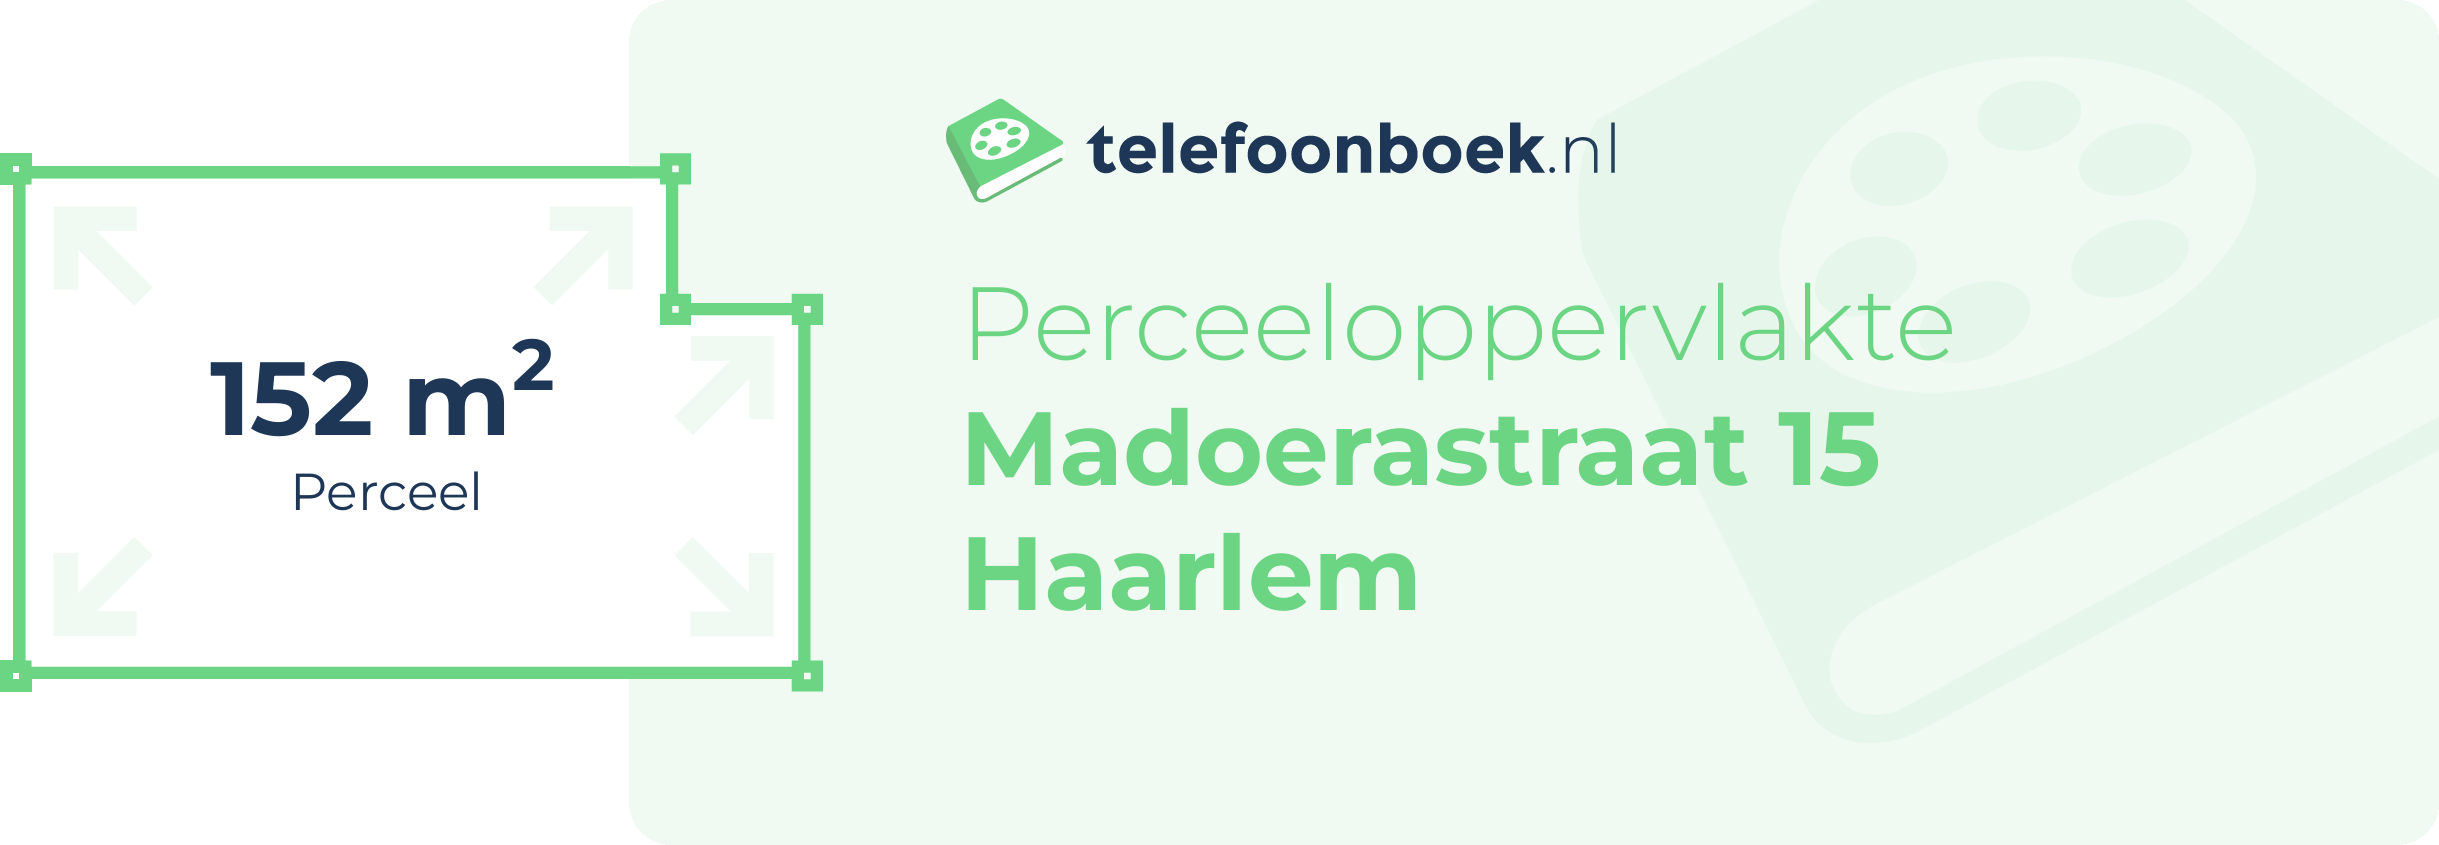 Perceeloppervlakte Madoerastraat 15 Haarlem